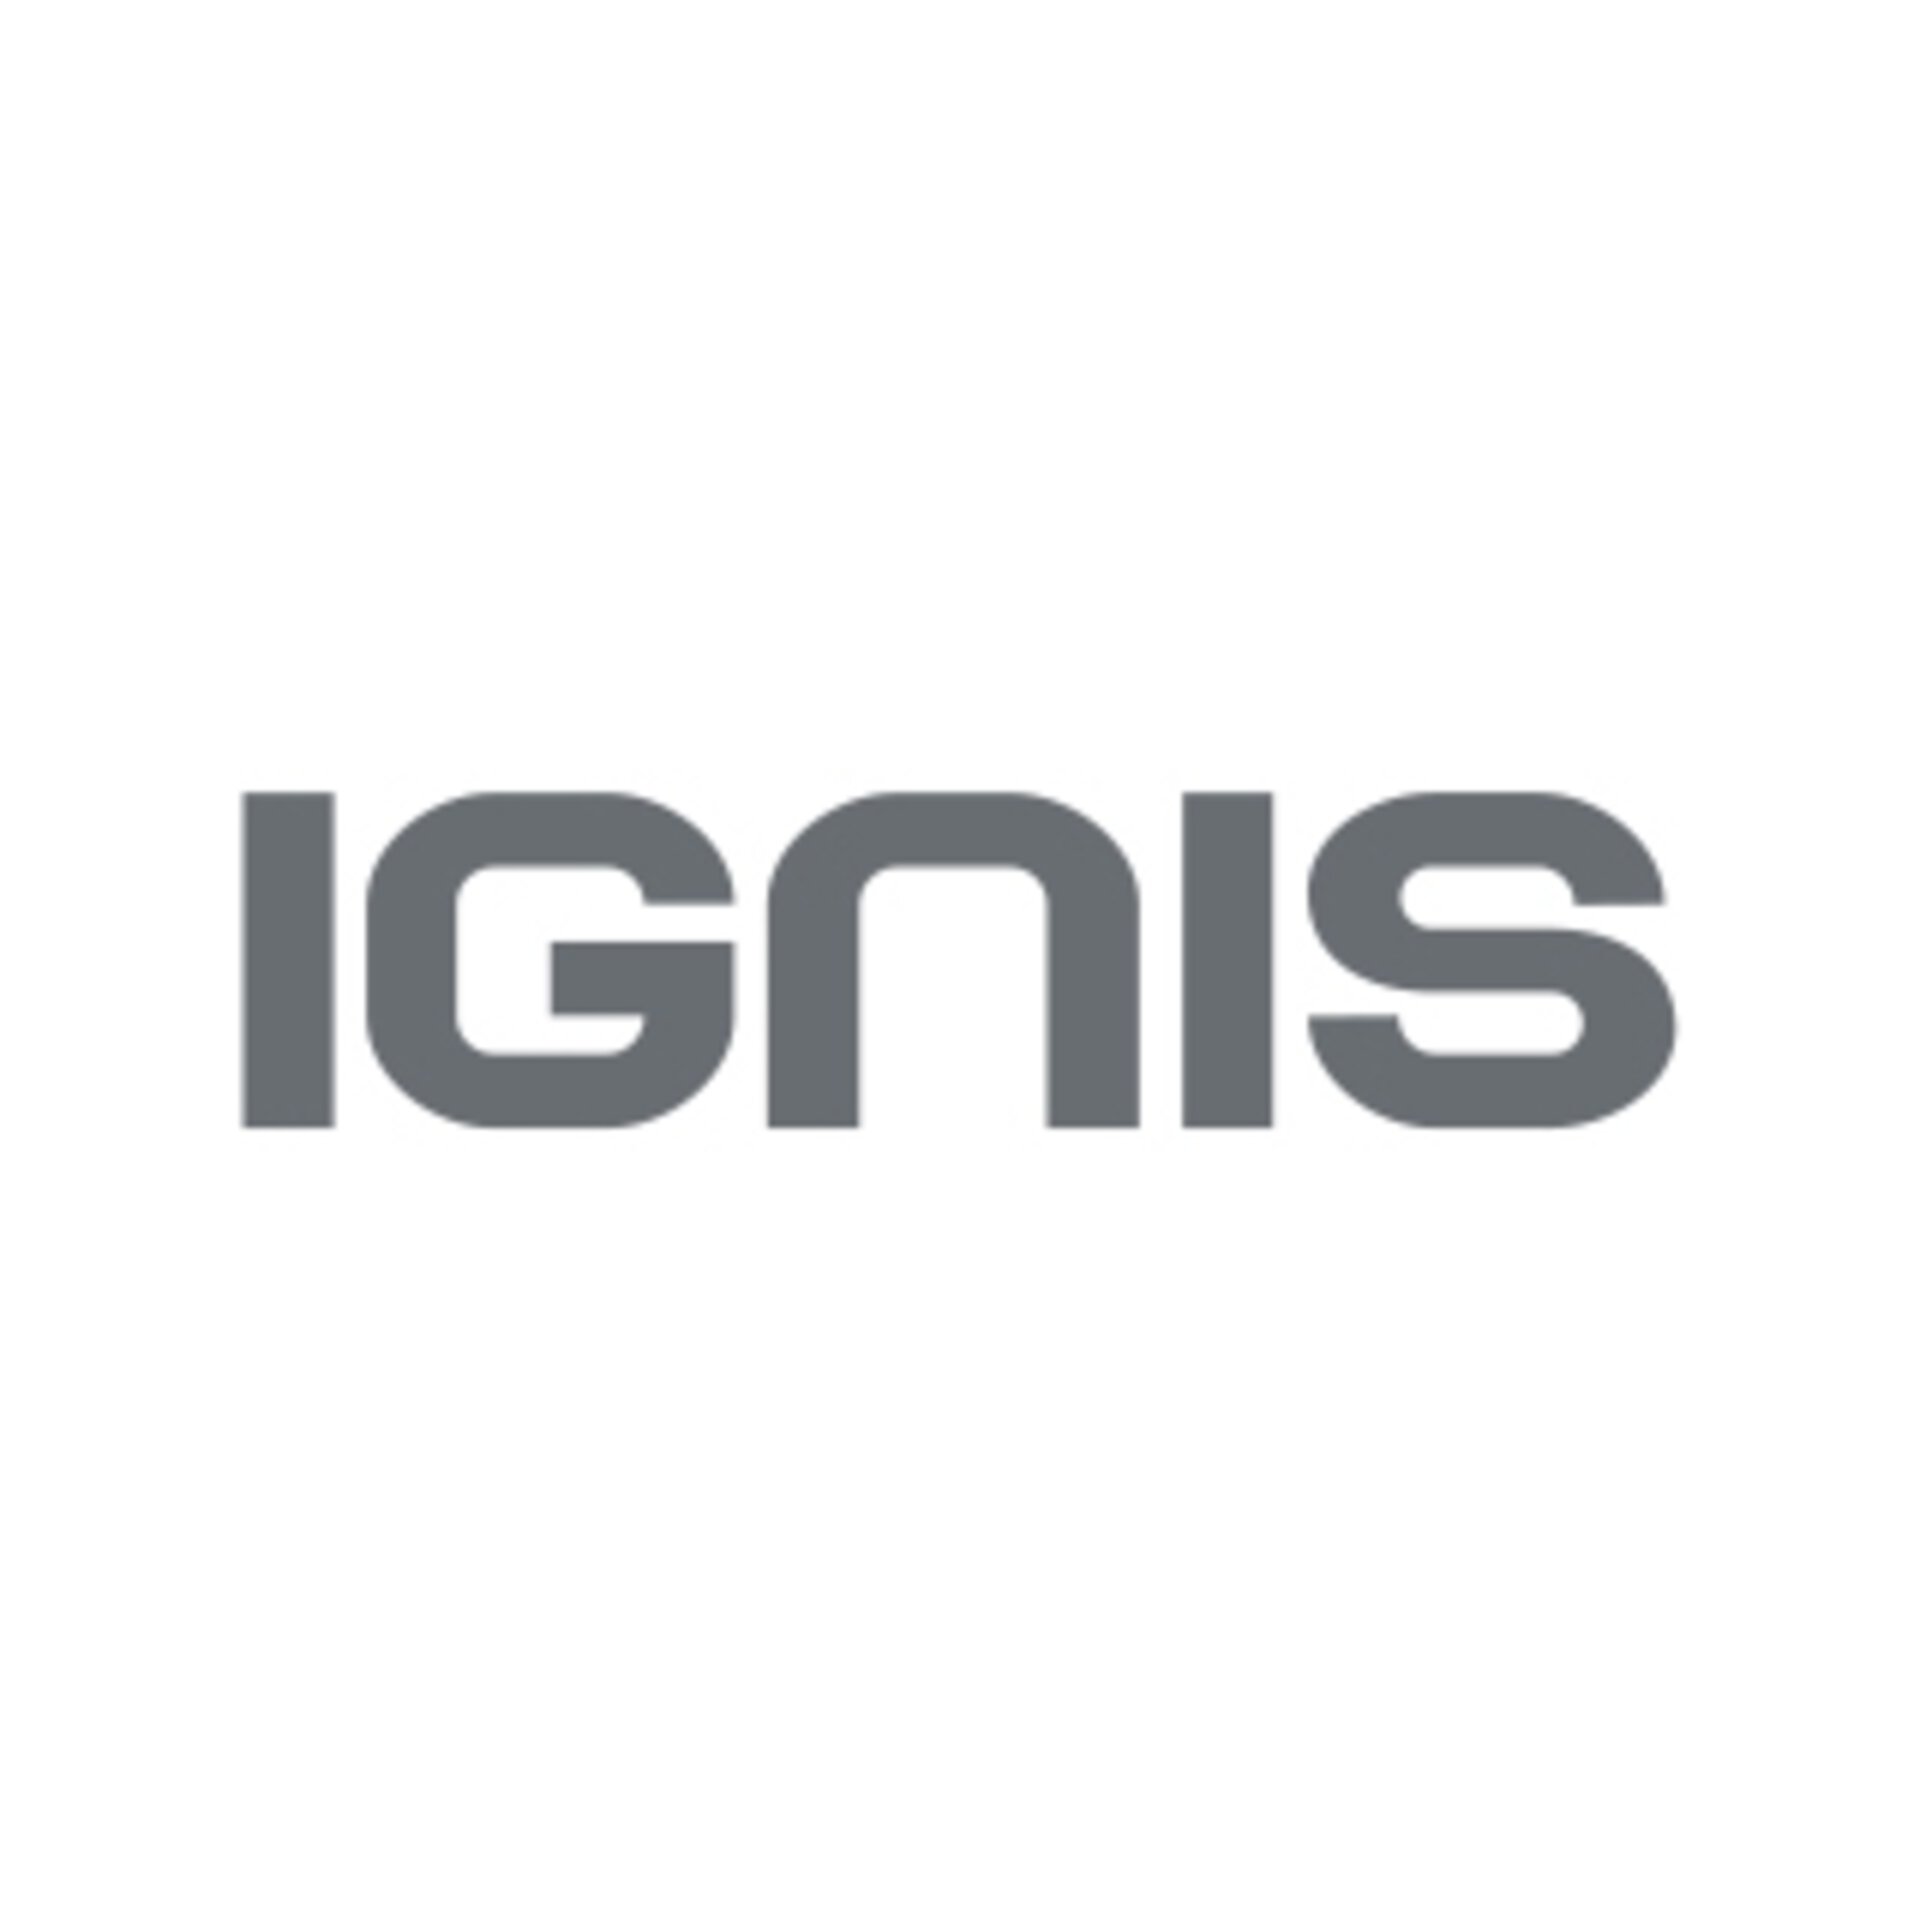 Logo IGNIS